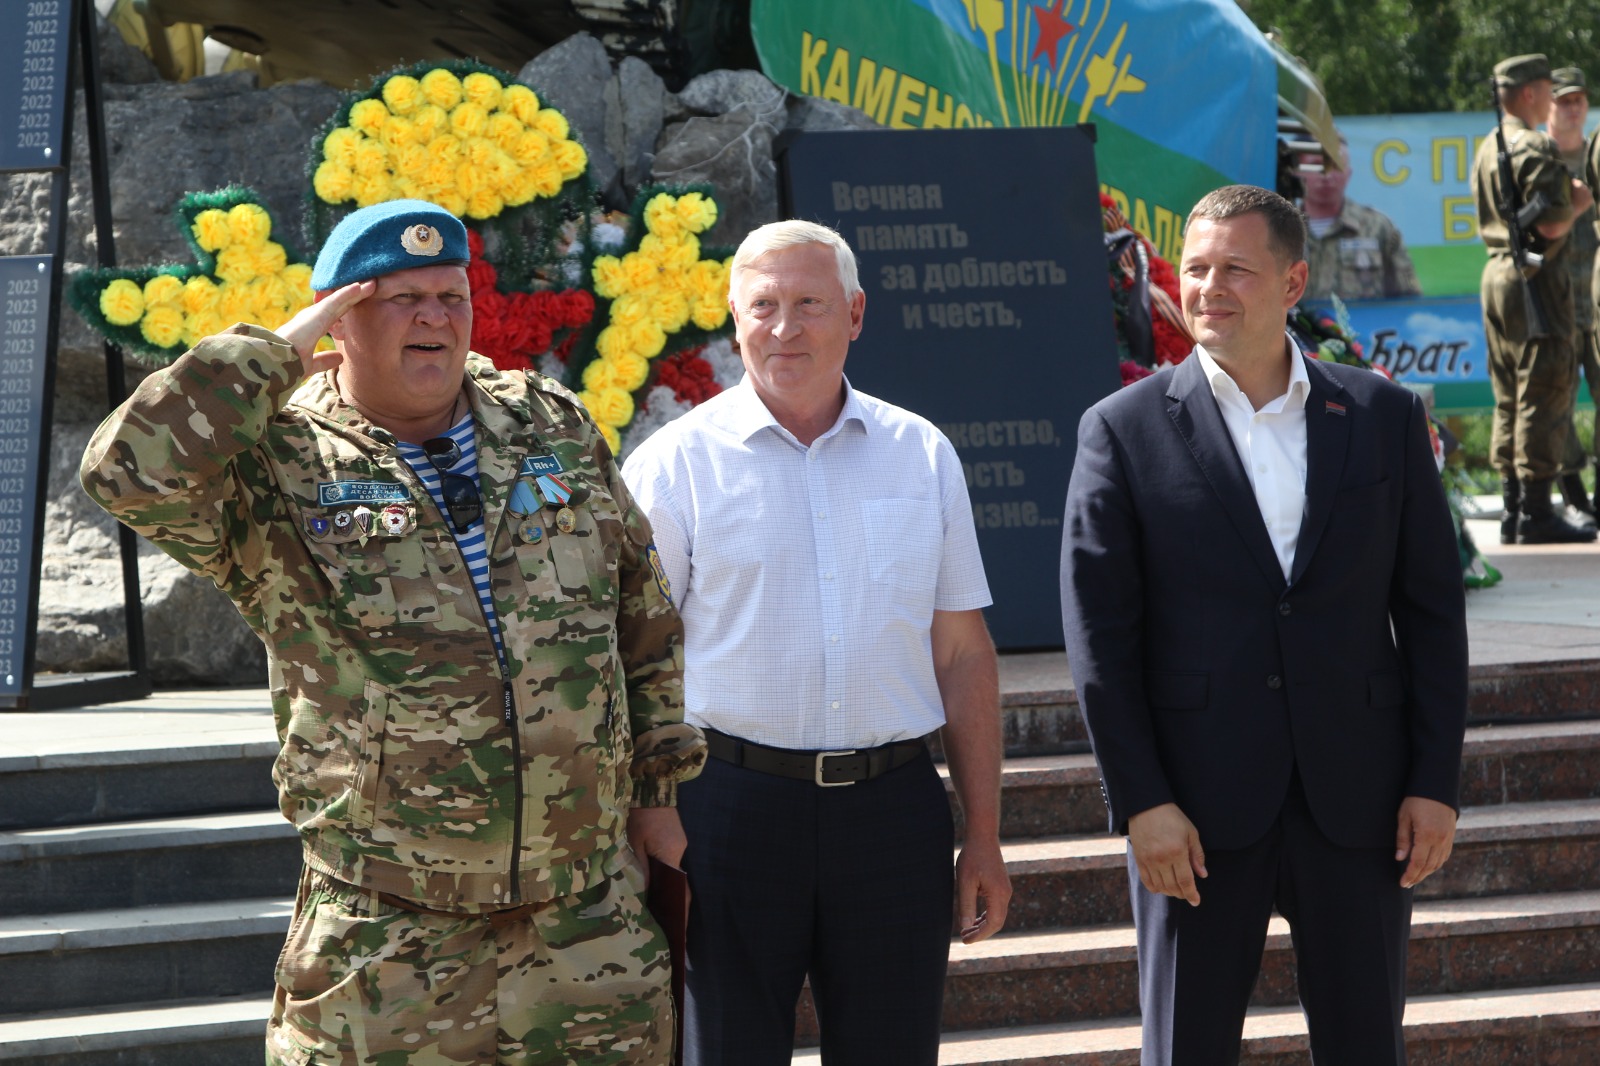  День воздушно-десантных войск отметили сегодня в Каменске-Уральском